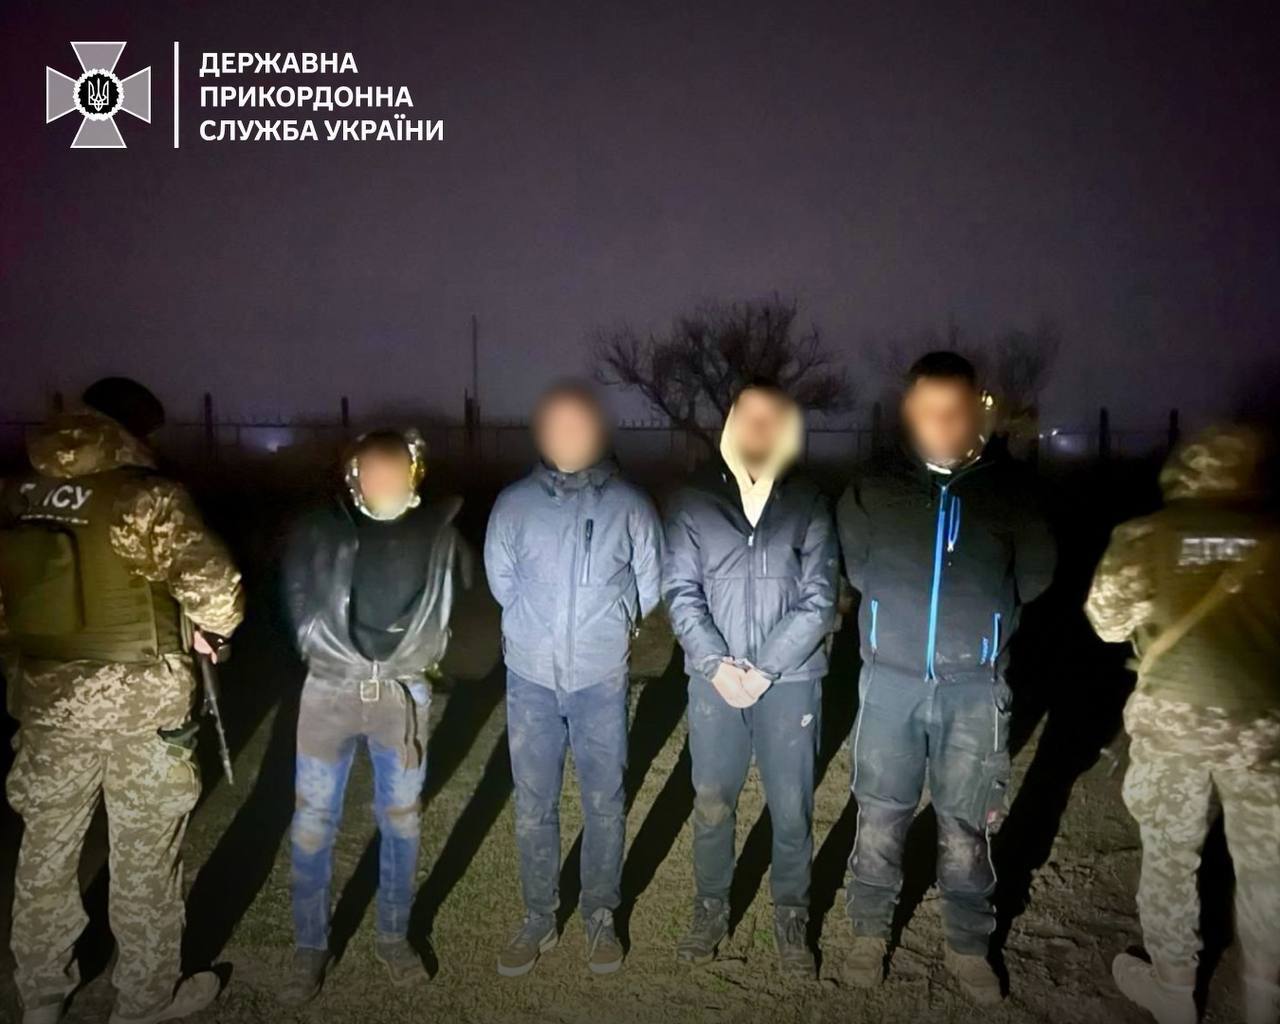 Придумали "блестящий план": в Одесской области мужчины в изотермических одеялах хотели пересечь границу, но были пойманы. Фото